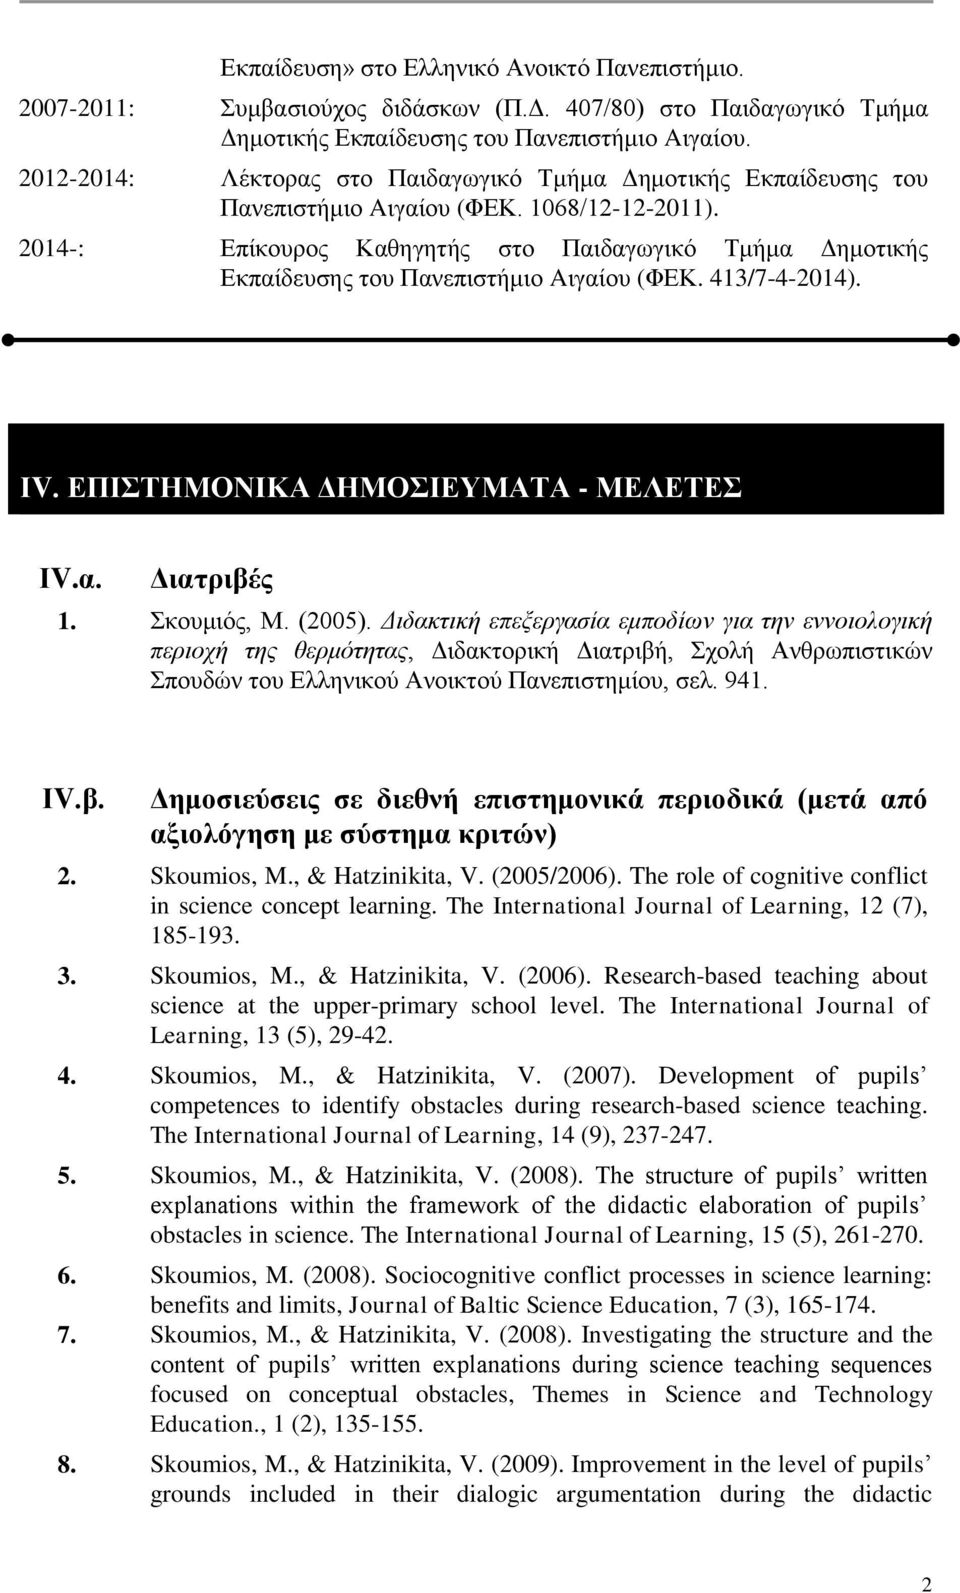 2014-: Επίκουρος Καθηγητής στο Παιδαγωγικό Τμήμα Δημοτικής Εκπαίδευσης του Πανεπιστήμιο Aιγαίου (ΦΕΚ. 413/7-4-2014). ΙV. ΕΠΙΣΤΗΜΟΝΙΚΑ ΔΗΜΟΣΙΕΥΜΑΤΑ - ΜΕΛΕΤΕΣ ΙV.α. Διατριβές 1. Σκουμιός, Μ. (2005).